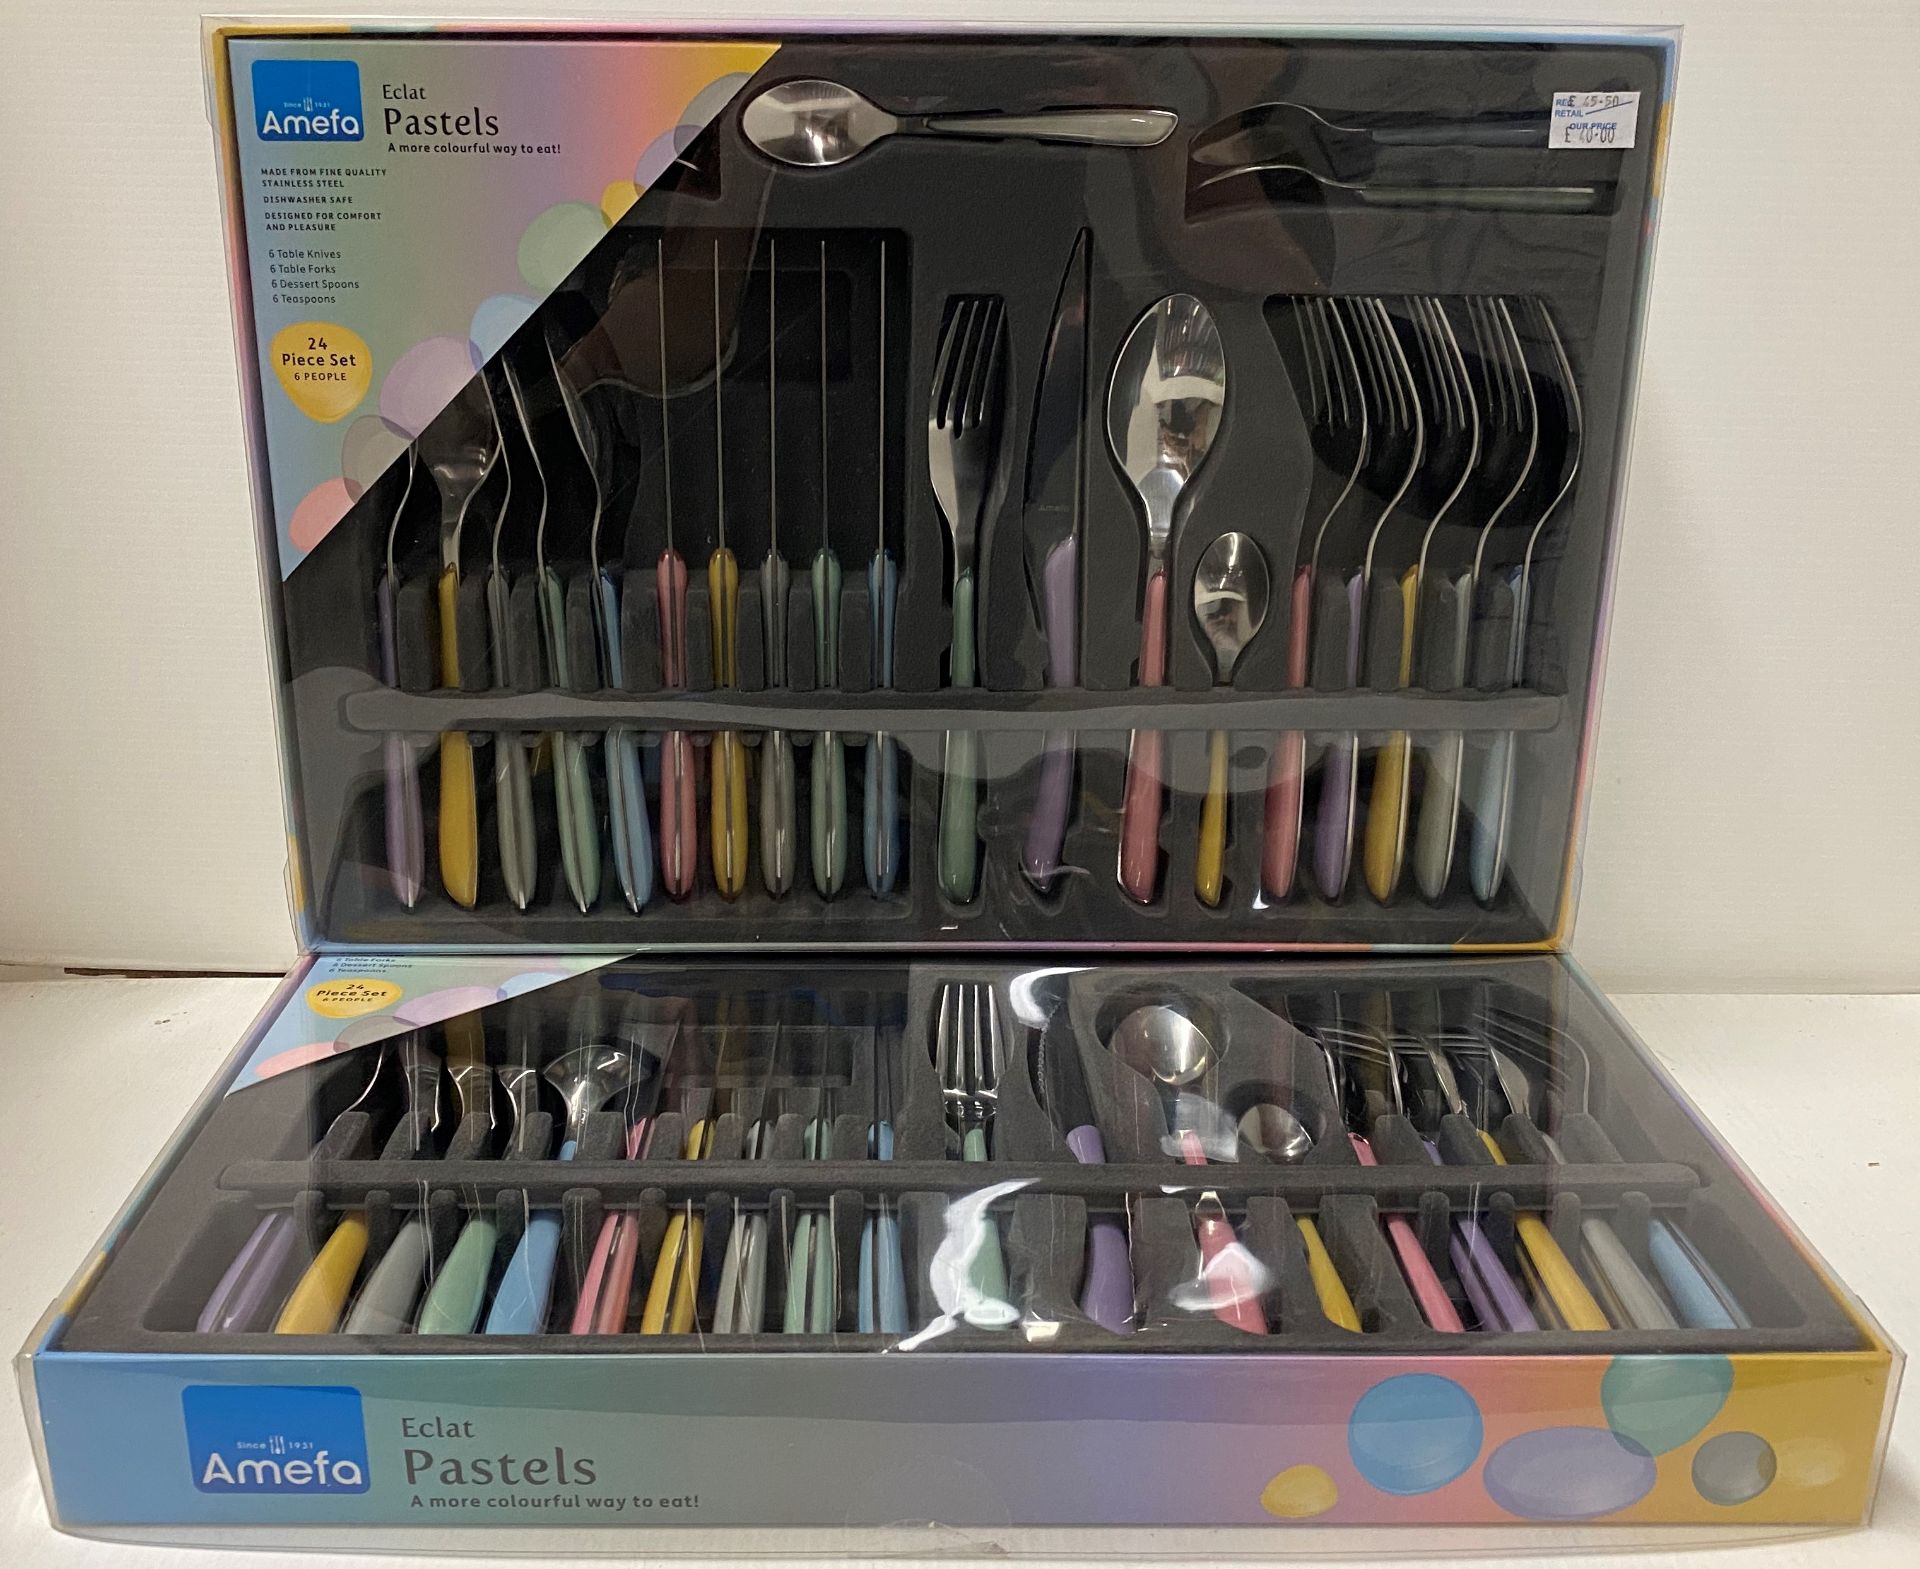 2 x Amefa Eclat Pastels 24 piece cutlery sets RRP £45.